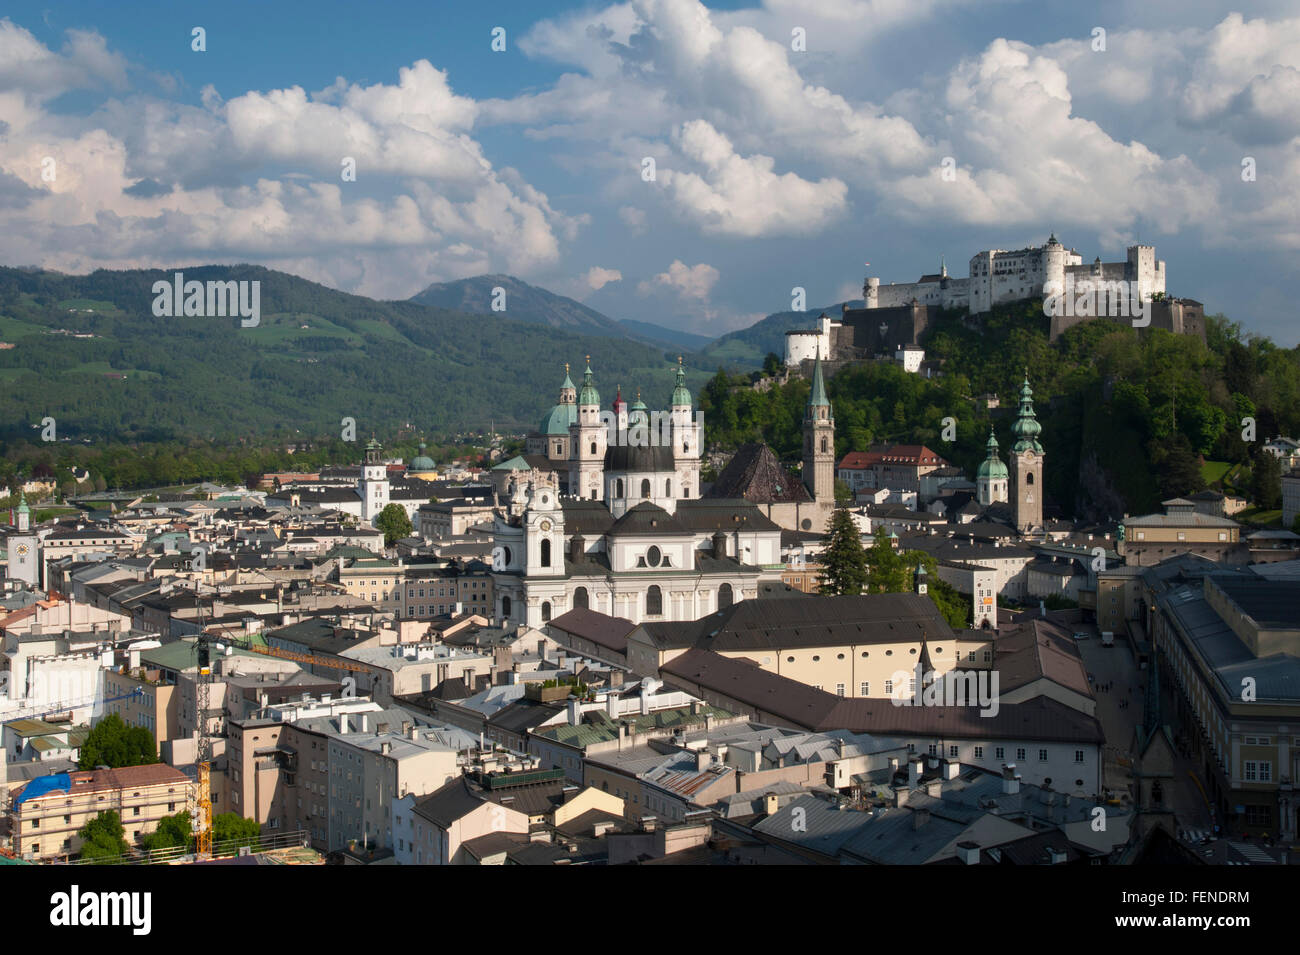 Mit Blick auf die Altstadt und die Festung Hohensalzburg, das historische Zentrum der Stadt Salzburg, ein UNESCO-Weltkulturerbe, Stockfoto